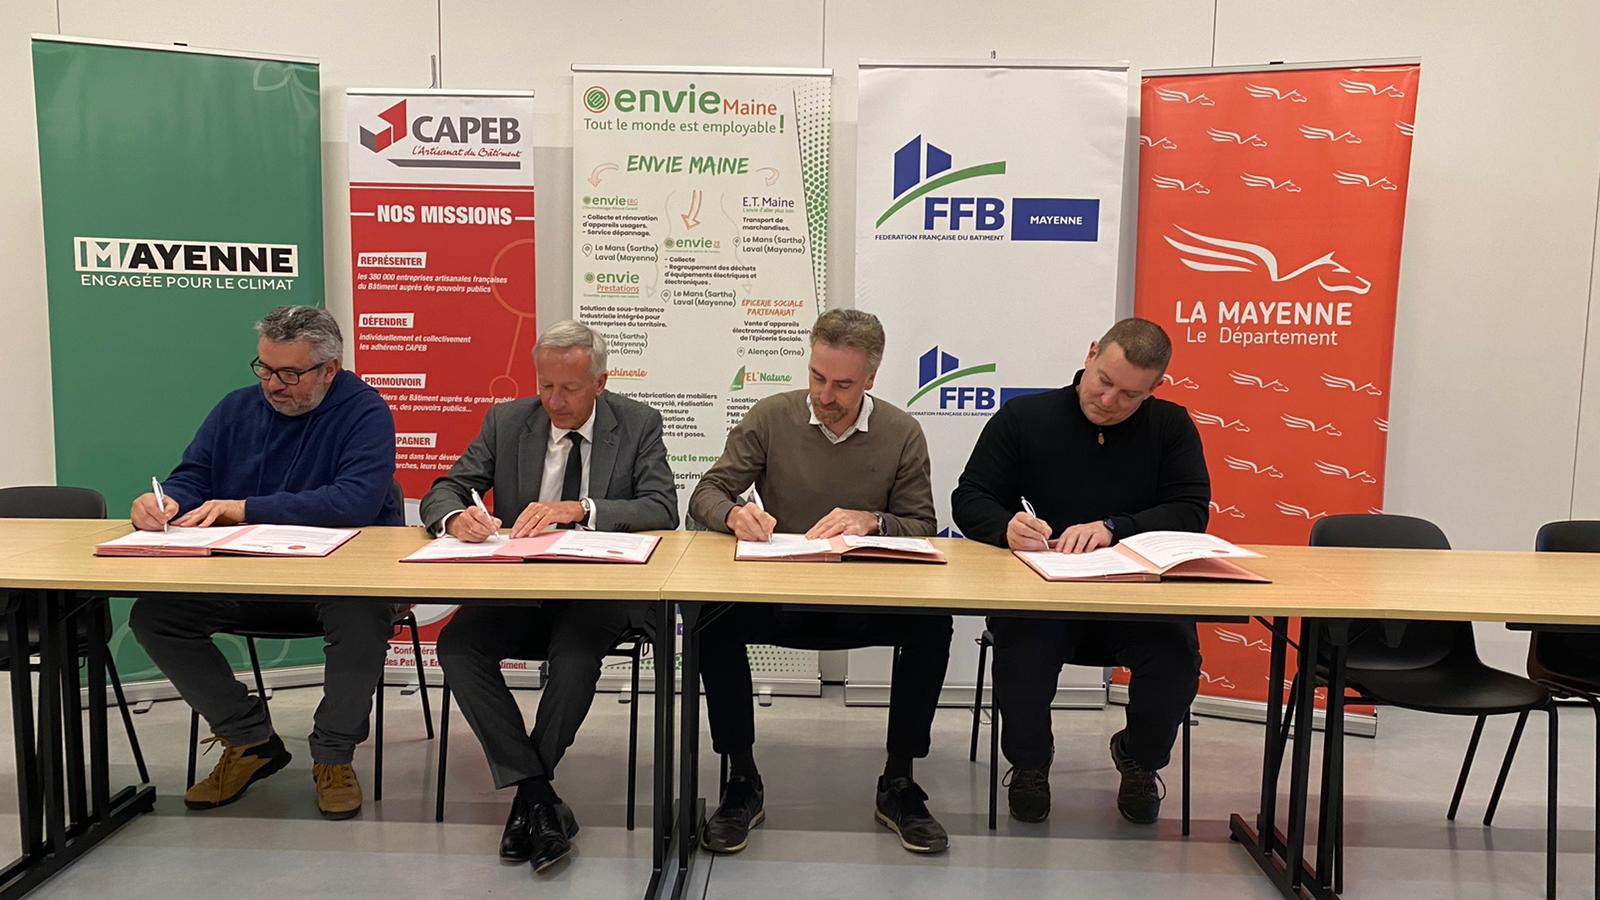  Le Conseil départemental de la Mayenne engagé dans la lutte contre la précarité énergétique, en lien avec ses partenaires